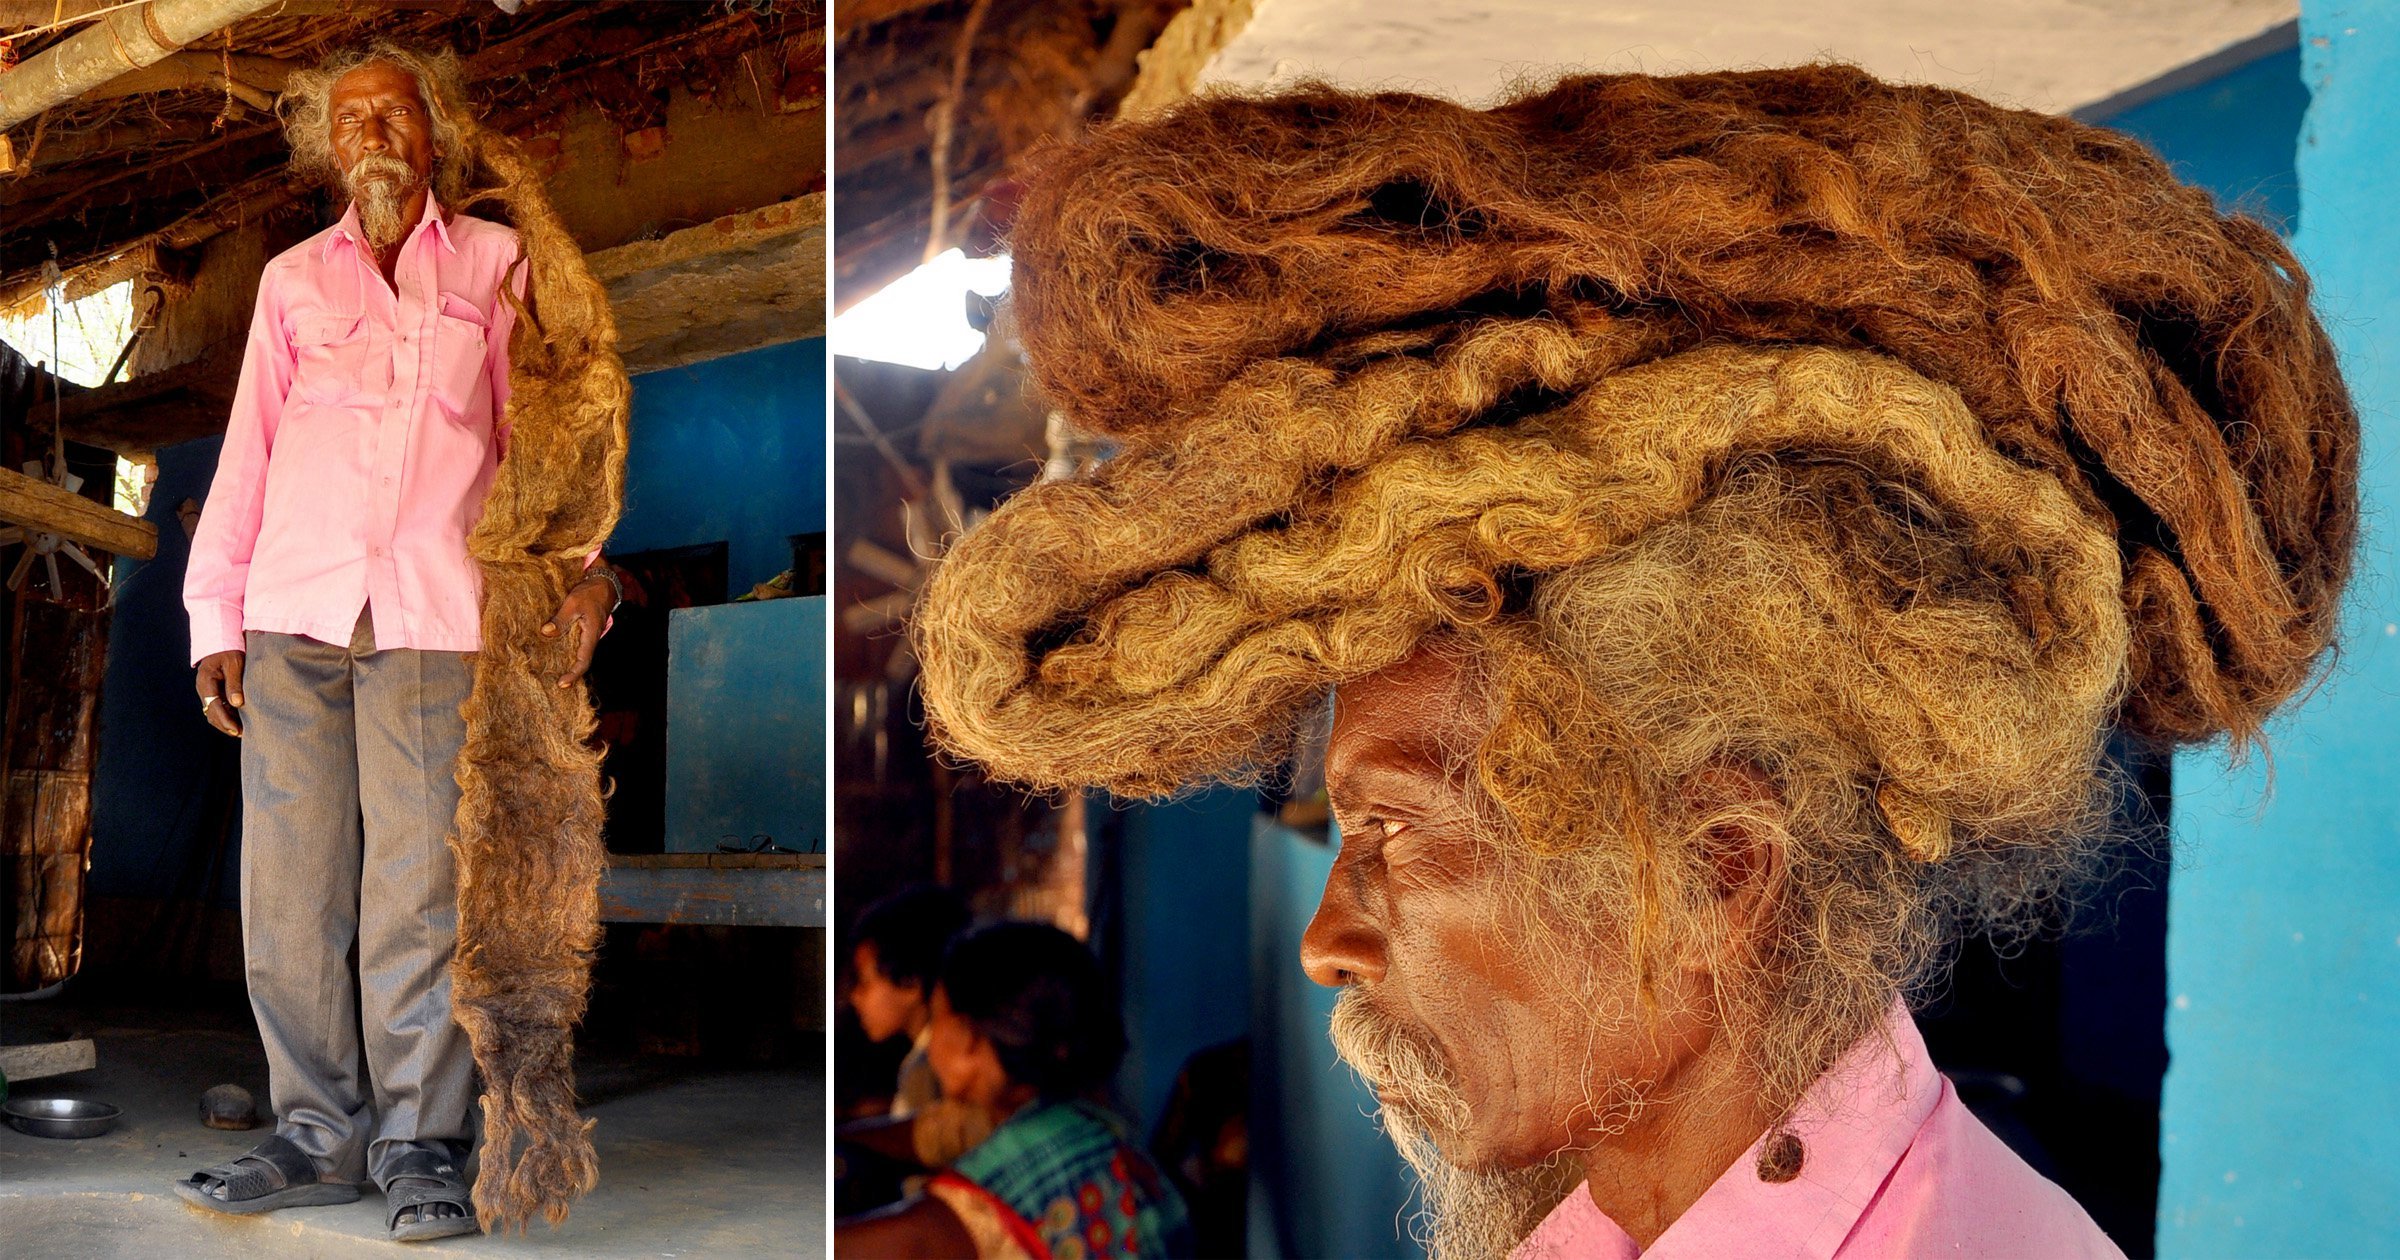 Inde : Cet homme ne s'est pas coupé les cheveux depuis 40 ans